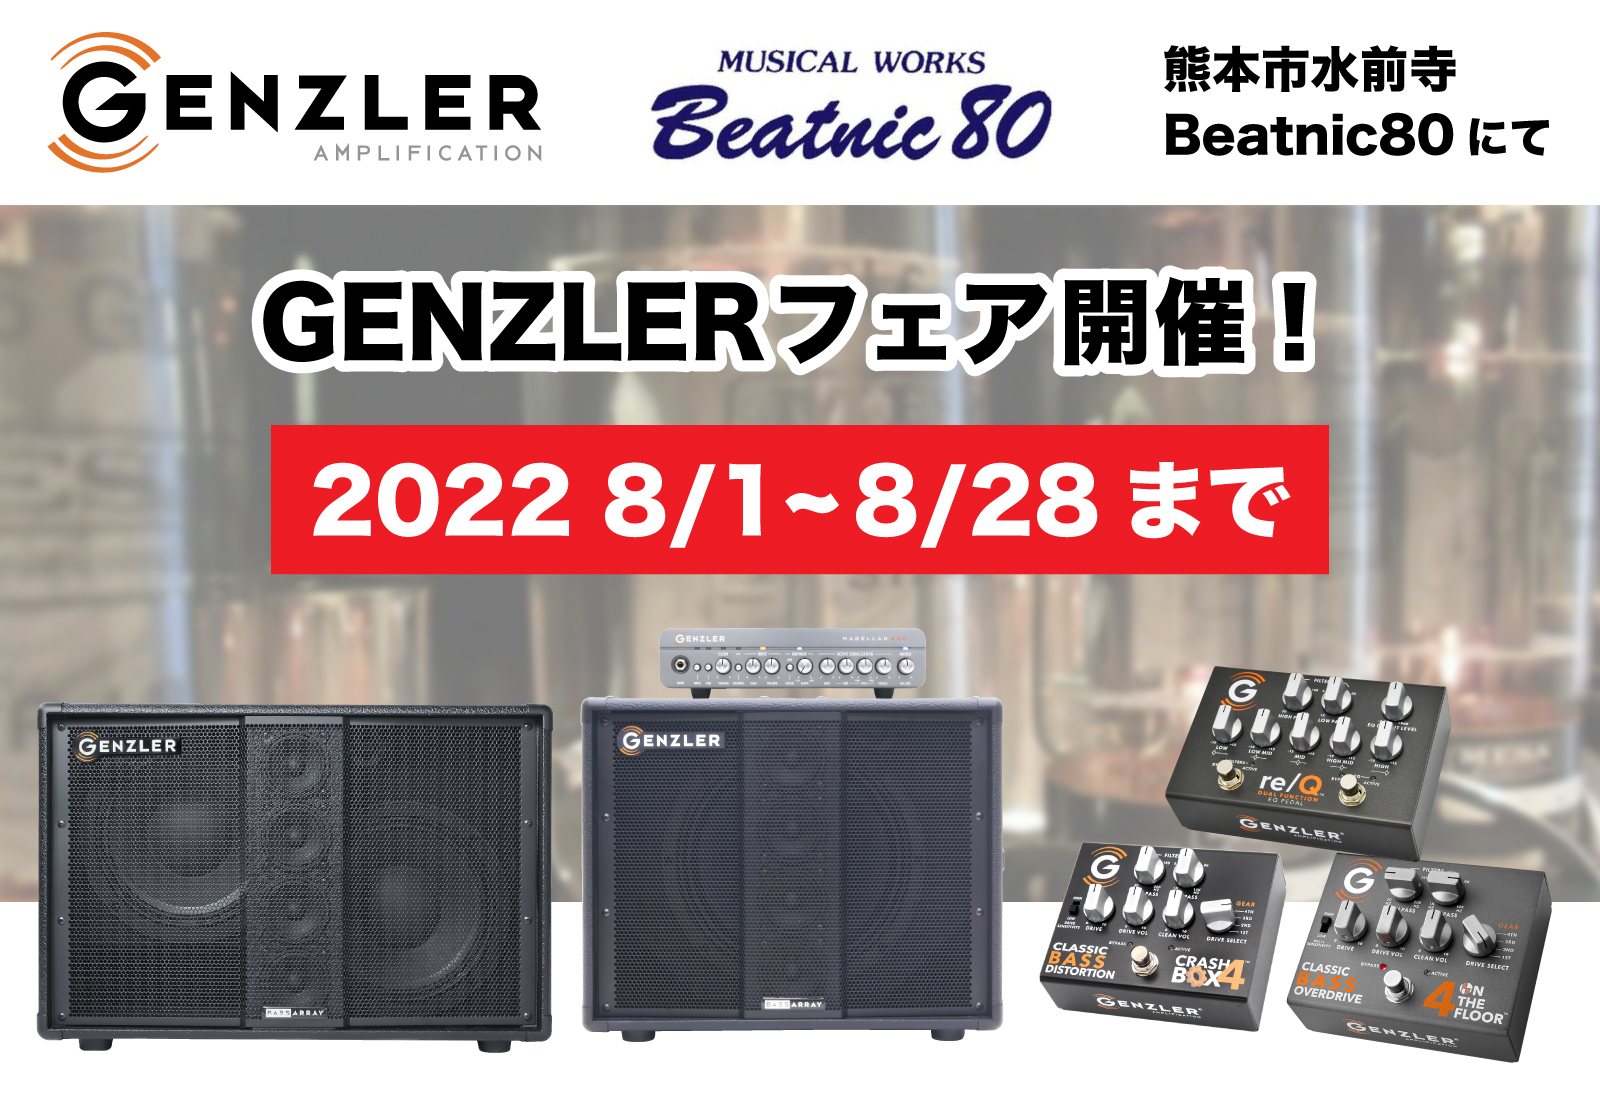 熊本市水前寺Beatnic80にてGENZLERフェアを開催いたします